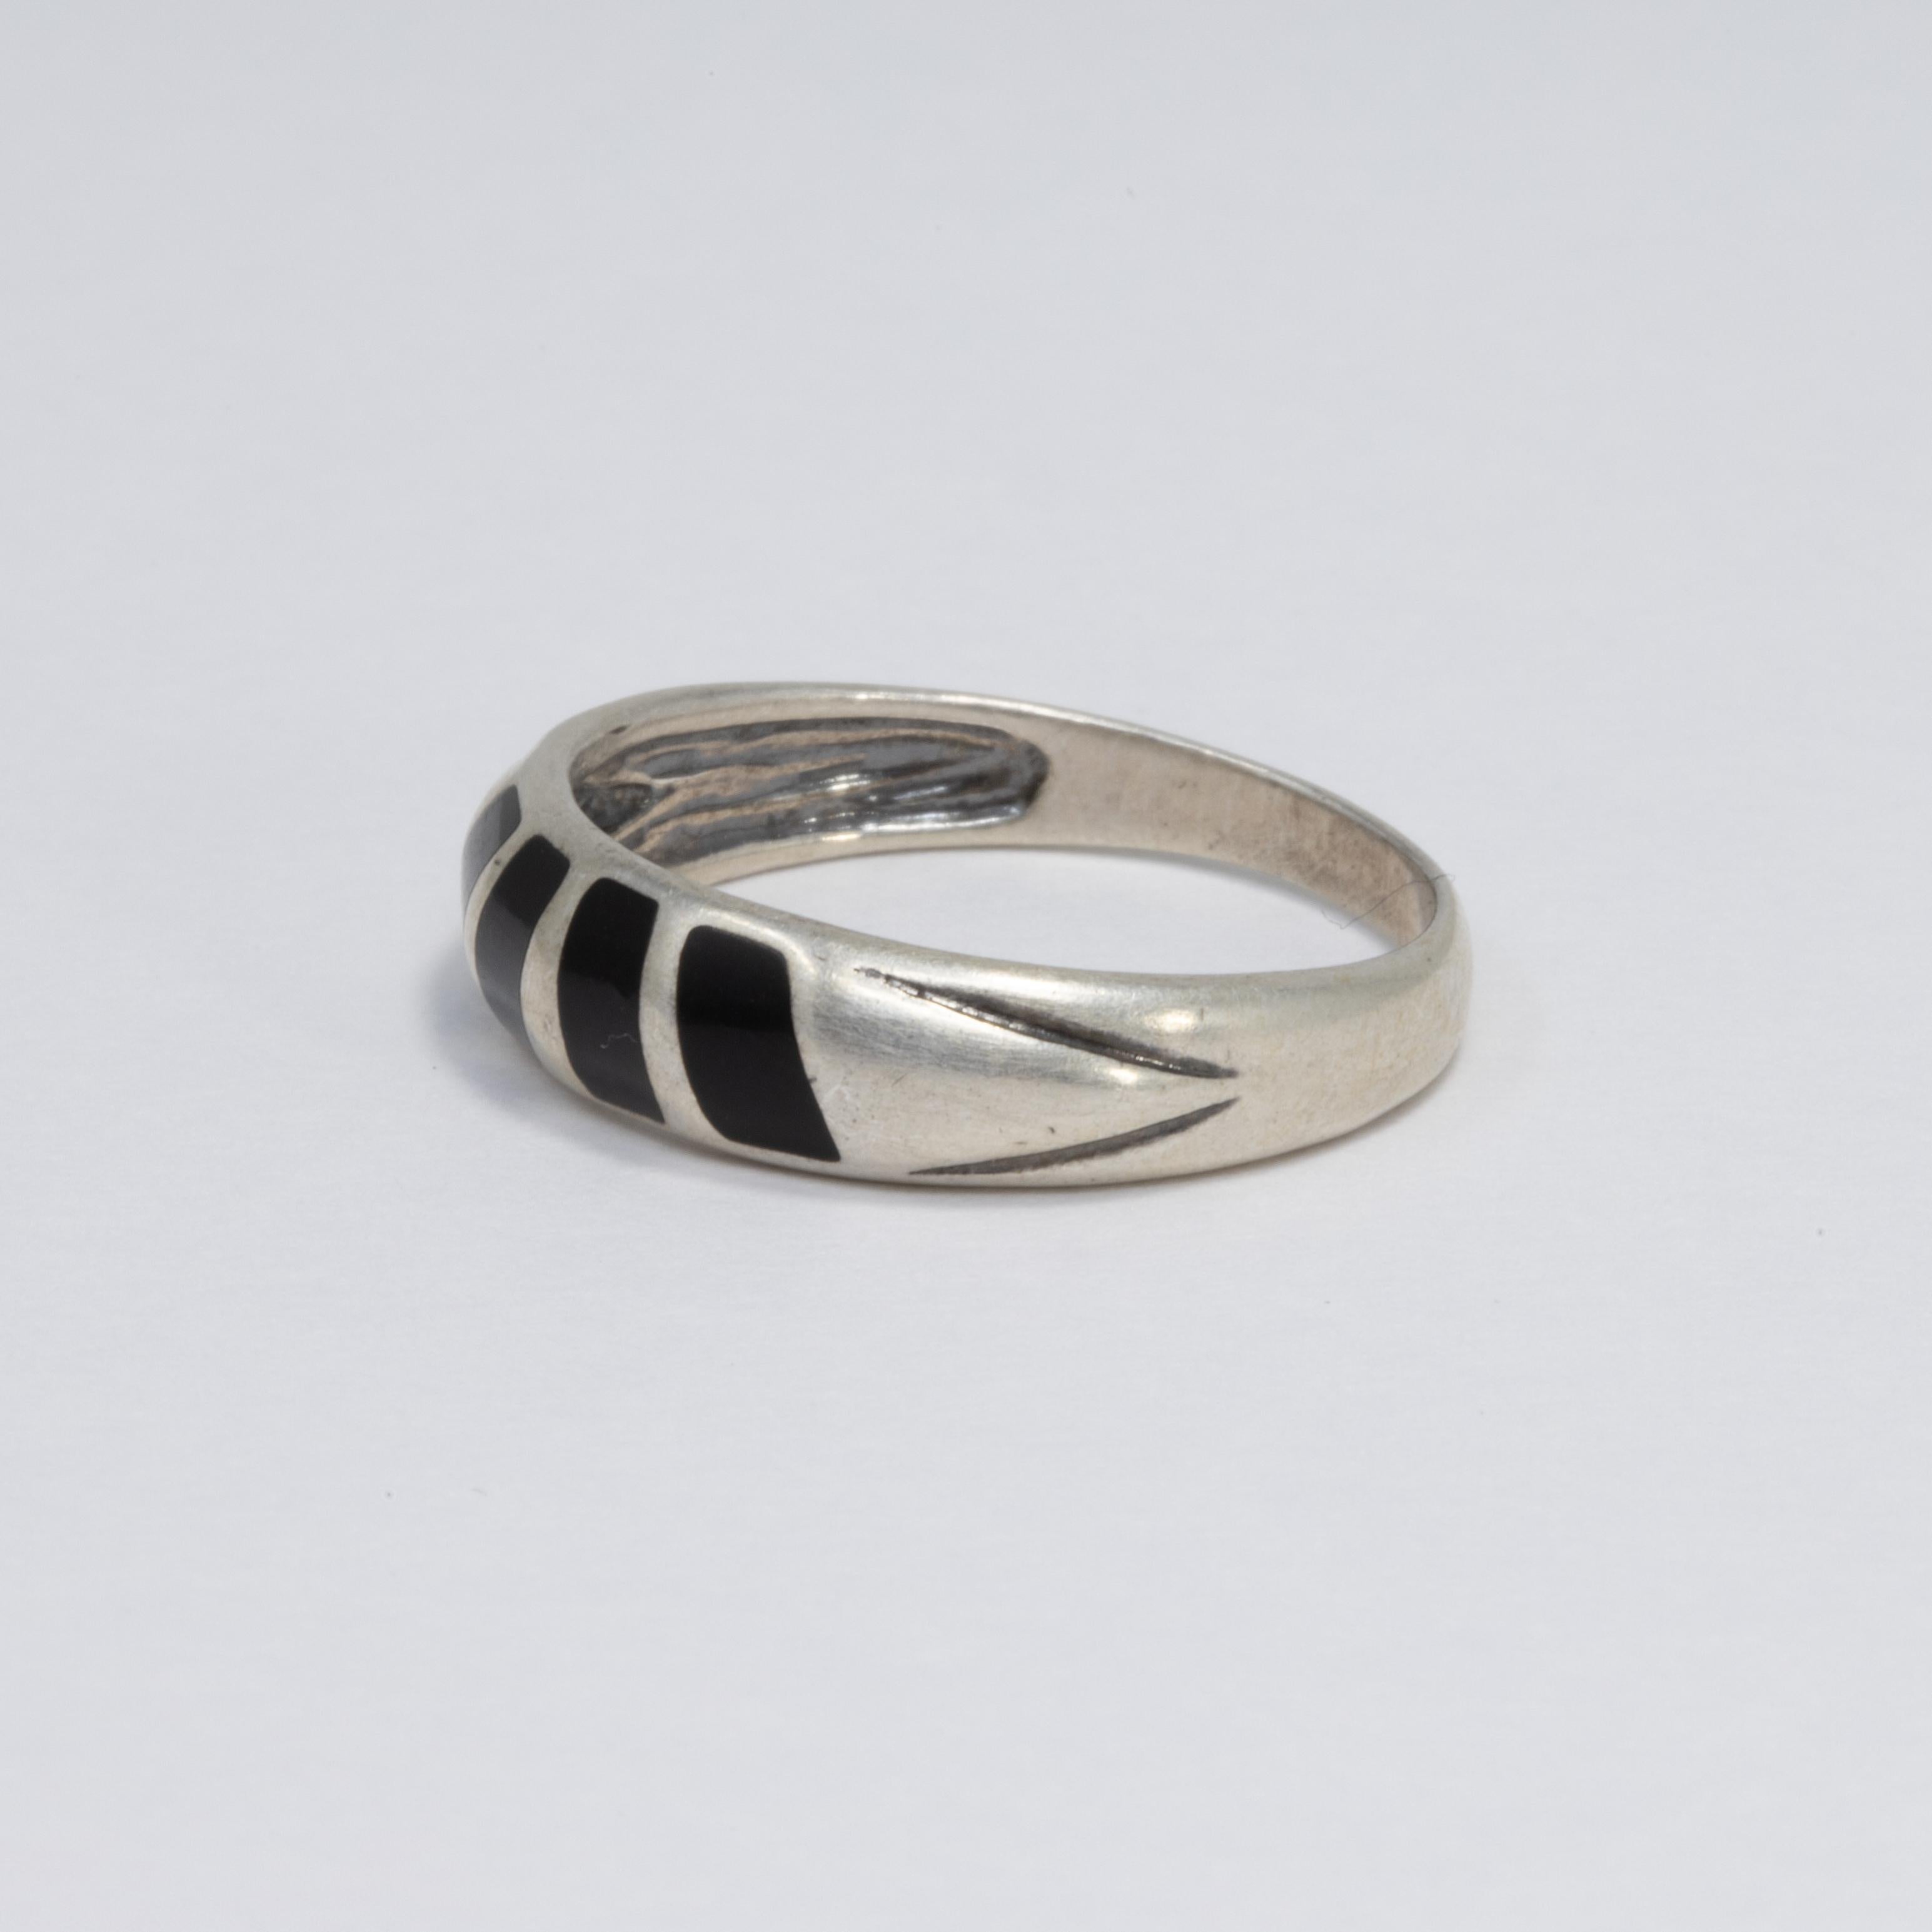 Stilvoller Ring aus Sterlingsilber im Vintage-Stil - mit verjüngtem Band und schwarzen Onyx-Edelsteineinlagen.

Ringgröße US 8

Marken / Punzierungen / etc: 925, CCP Ster, 8, und andere (siehe Fotos)